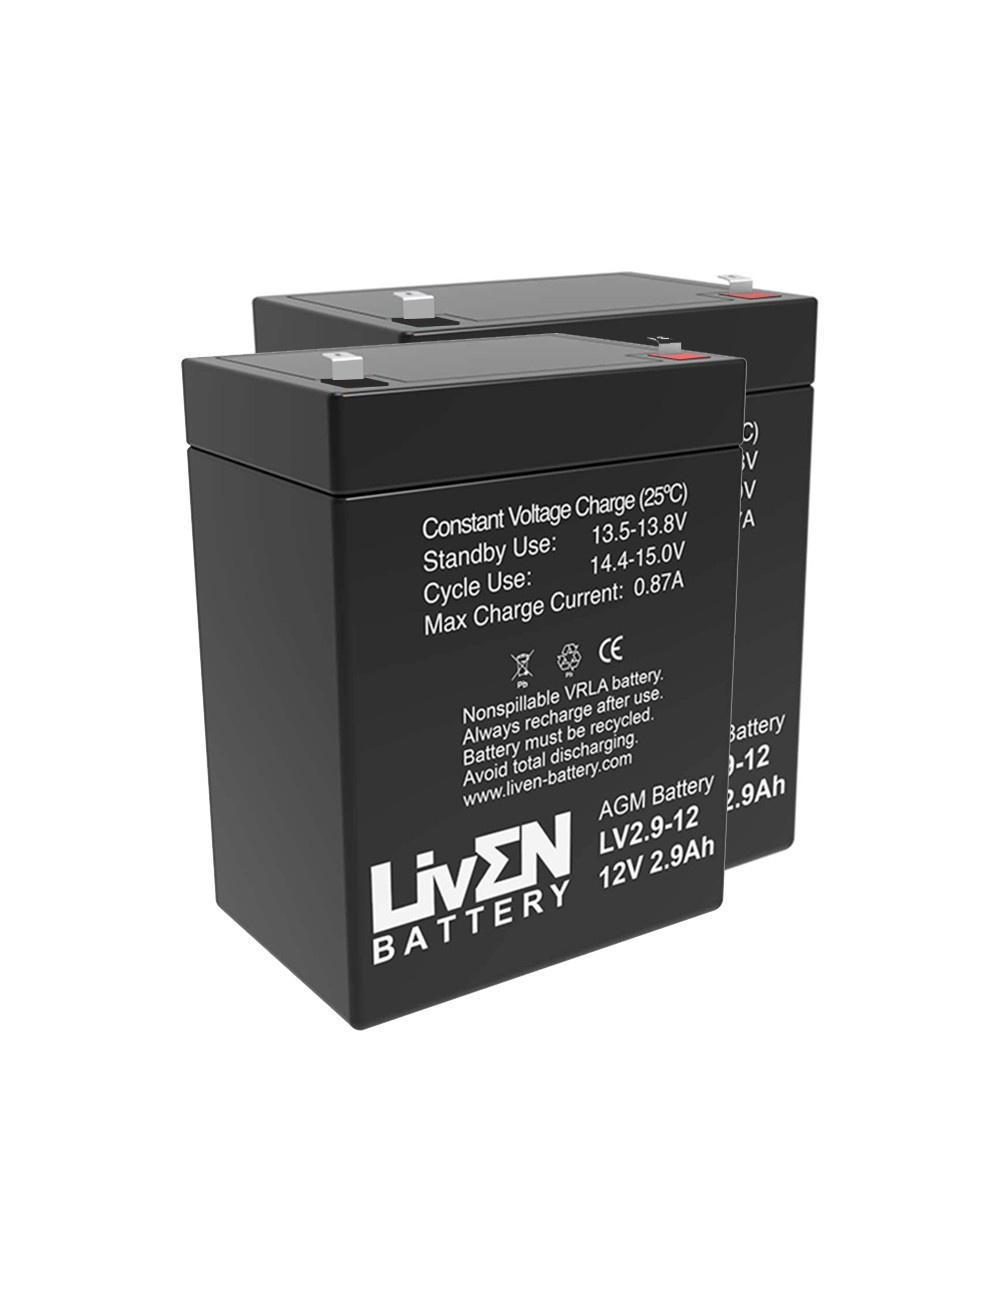 Pacote 2 baterias (24V) para elevadores de transferência e cestas Obea Lifty 5 de 12V 2,9Ah C20 Liven LV2.9-12 - 1